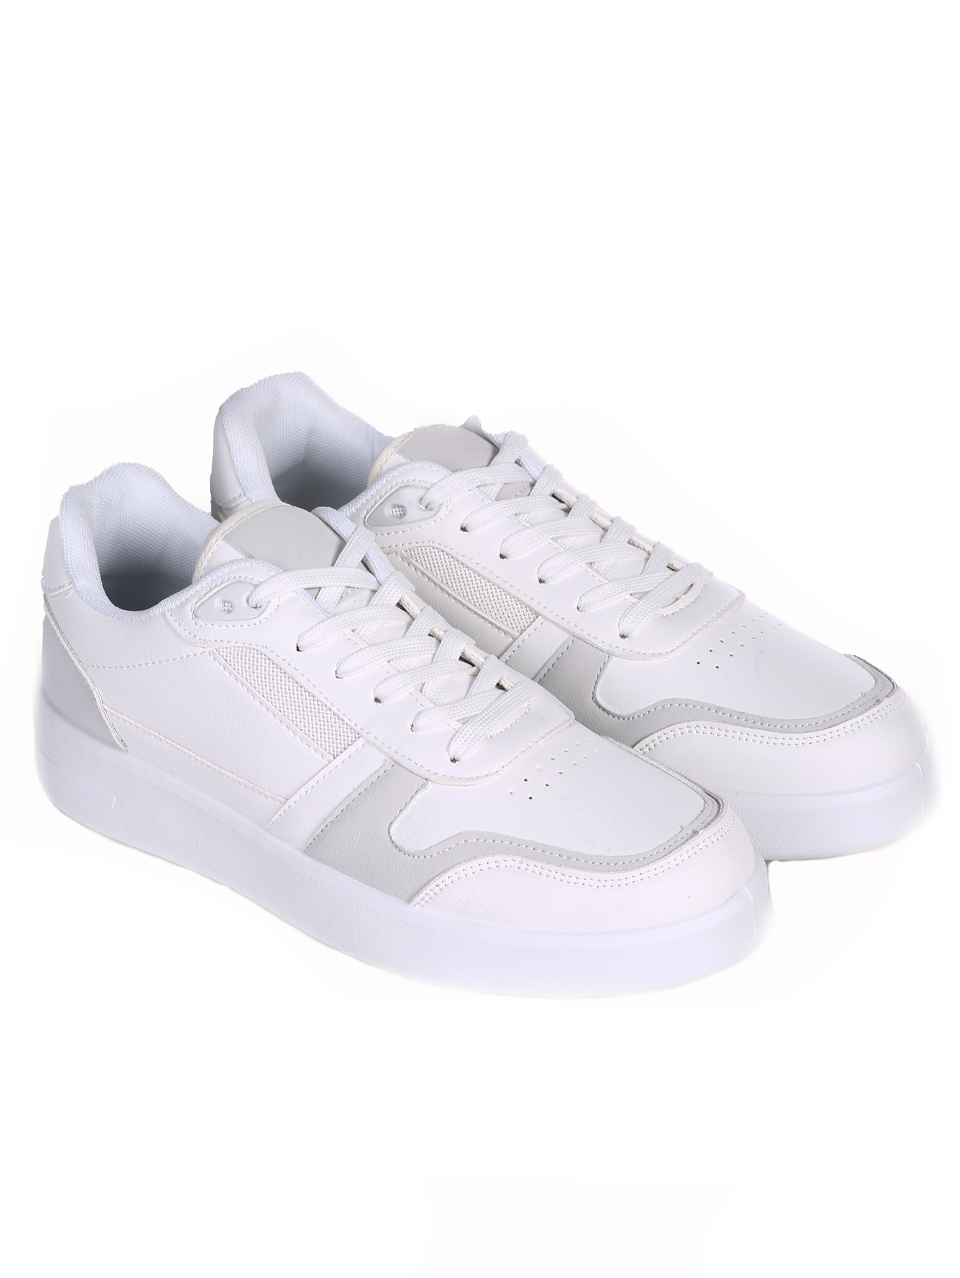 Ежедневни мъжки обувки в бял/сив цвят 7U-24118 white/grey